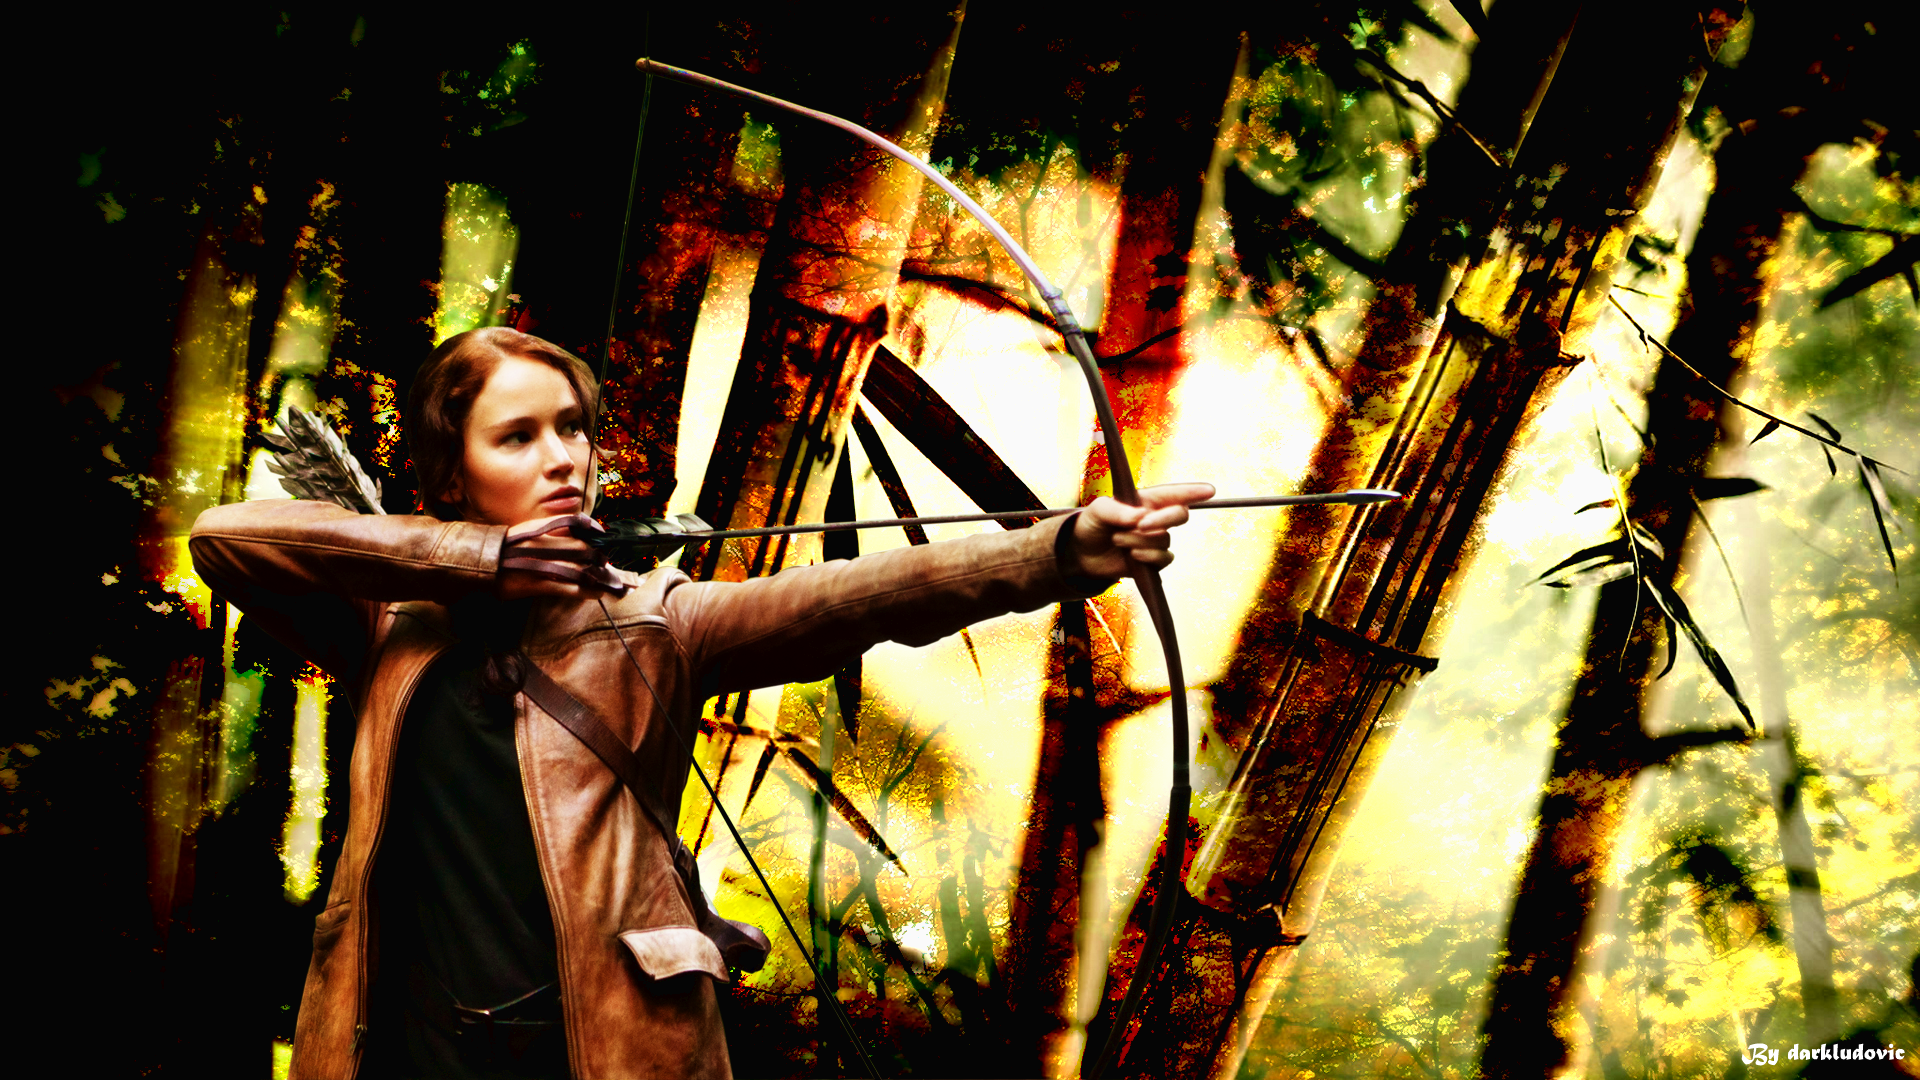 Jennifer Lawrence Hunger Games wallpaper by darkludovic on DeviantArt